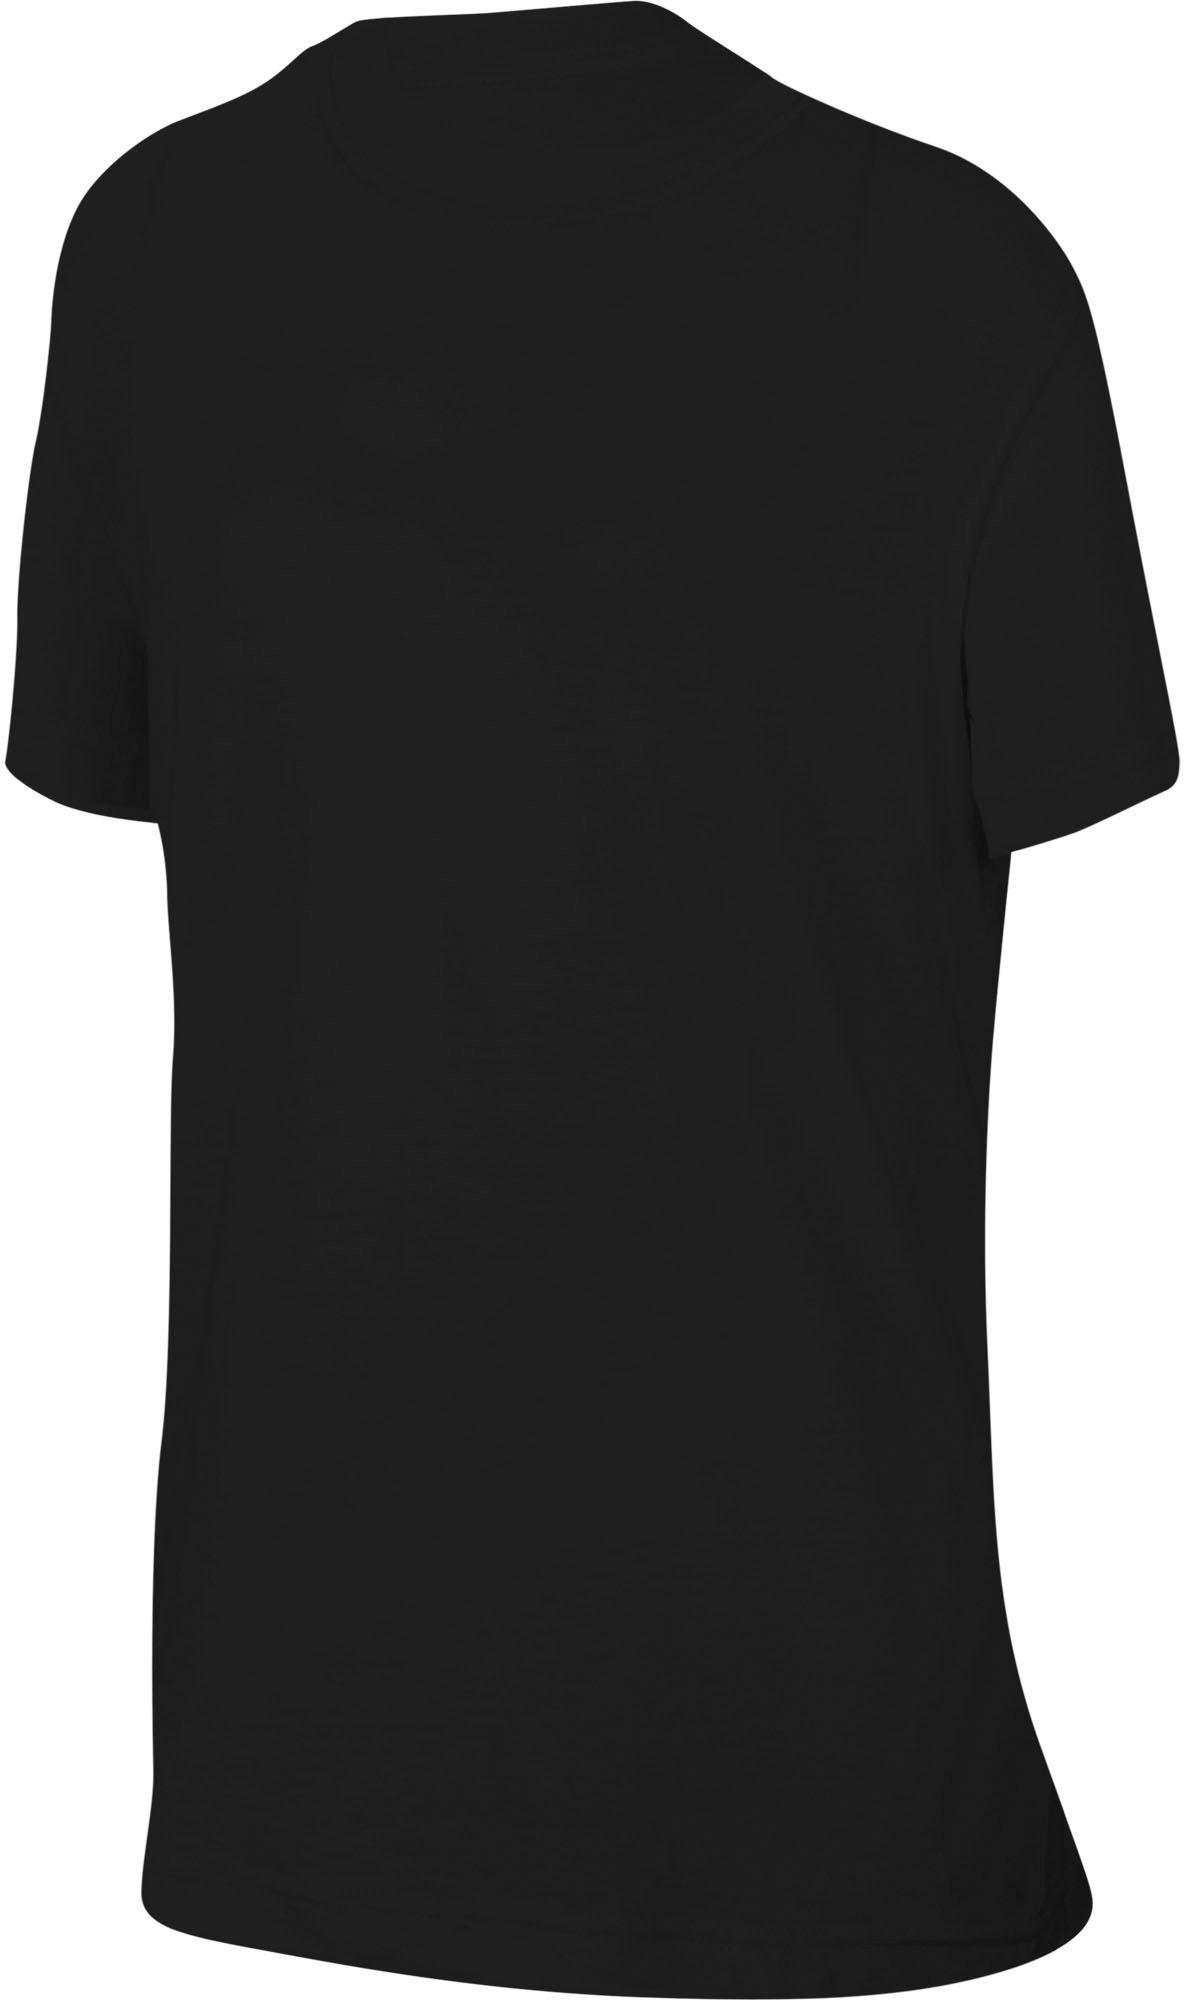 (Girls) Nike Sportswear T-Shirt Big T-Shirt schwarz Kids'